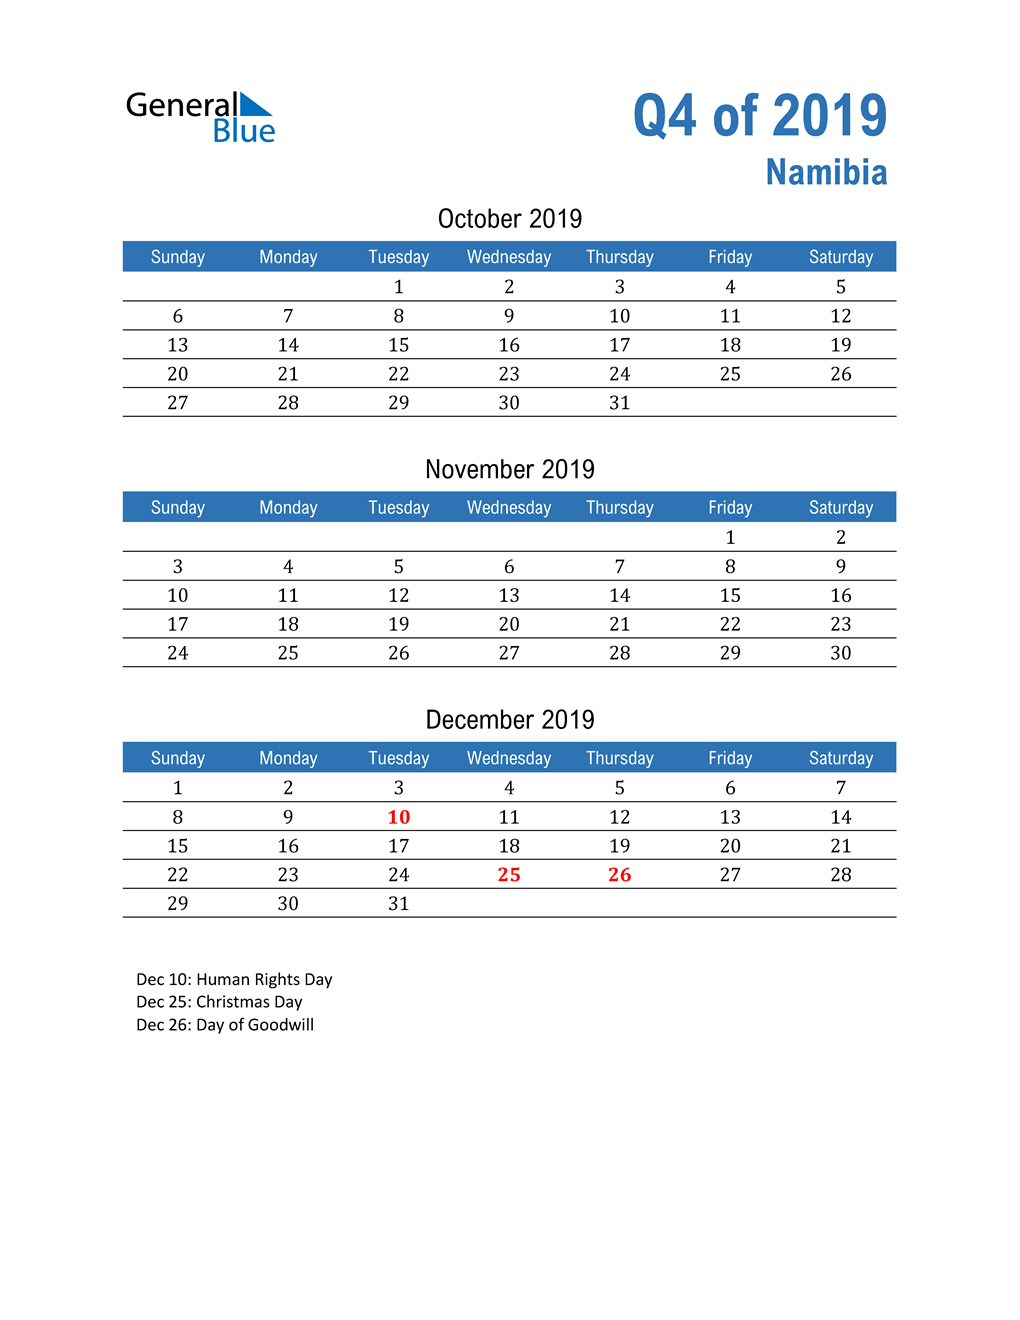  Namibia 2019 Quarterly Calendar 